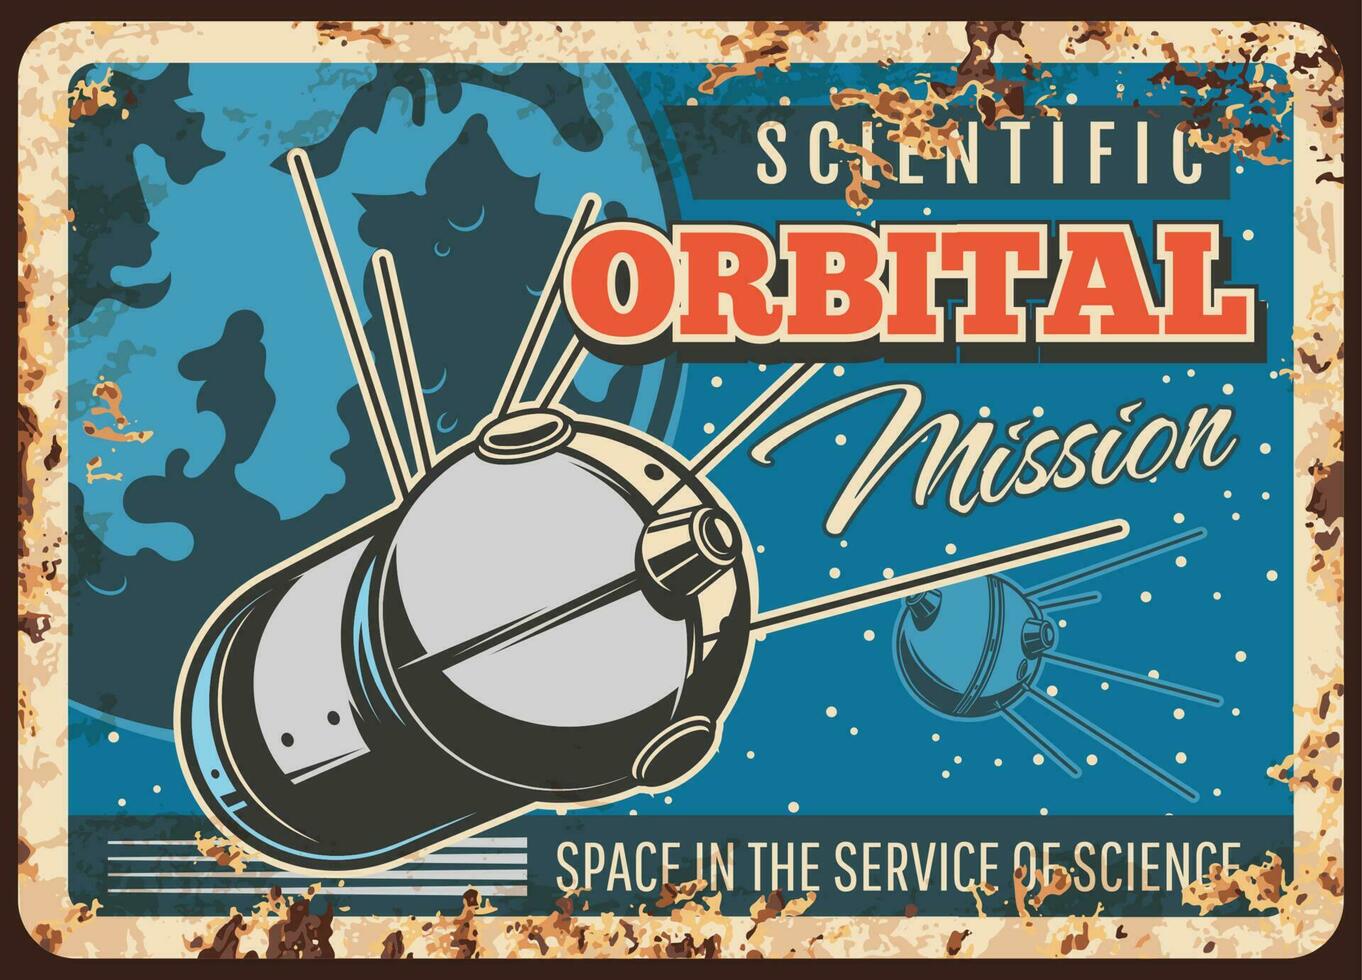 satélite orbital científico missão oxidado prato vetor